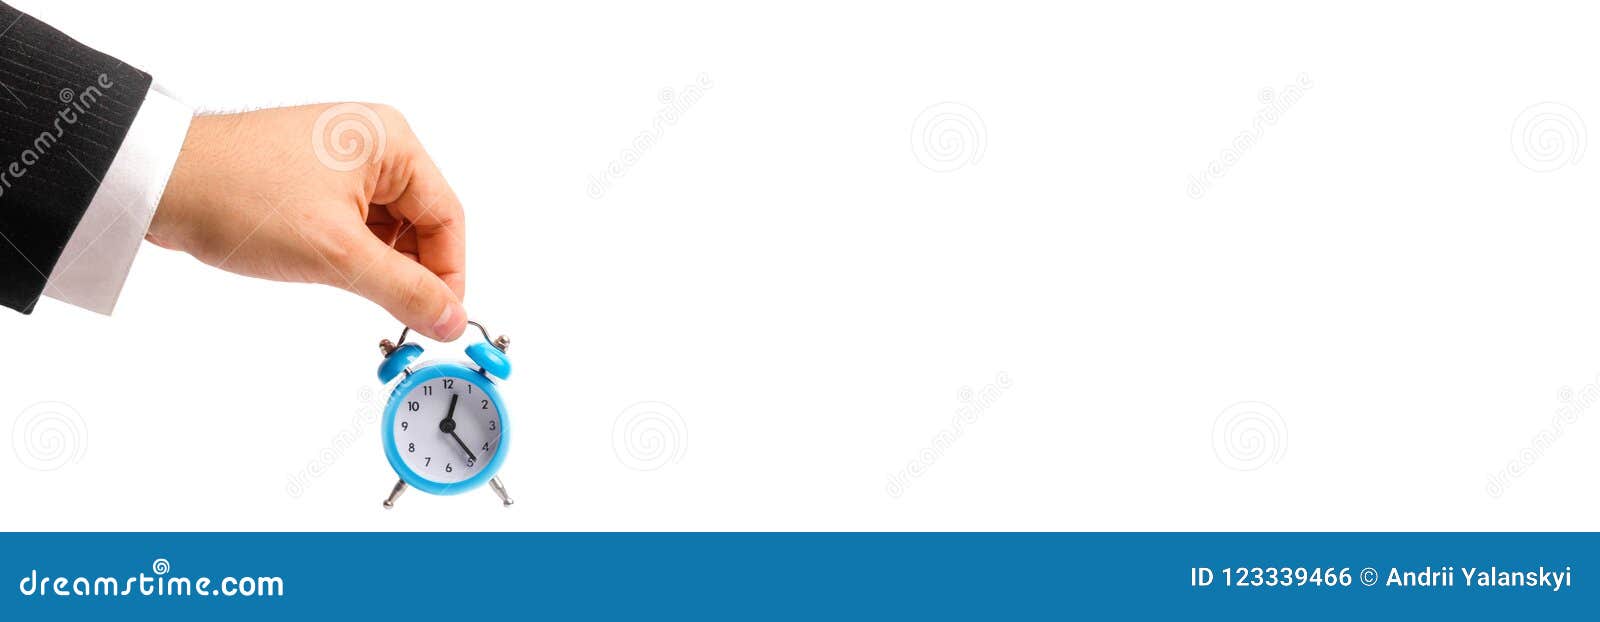 Eine Geschäftsmann ` s Hand hält einen blauen Wecker auf einem weißen Hintergrund Konzept des Flusses der Zeit, Zeit zur Aktion Stündlicher Lohn für Arbeit Spät für Arbeit und Aufenthalt für Teilzeitarbeit Zeit ist Geld fahne